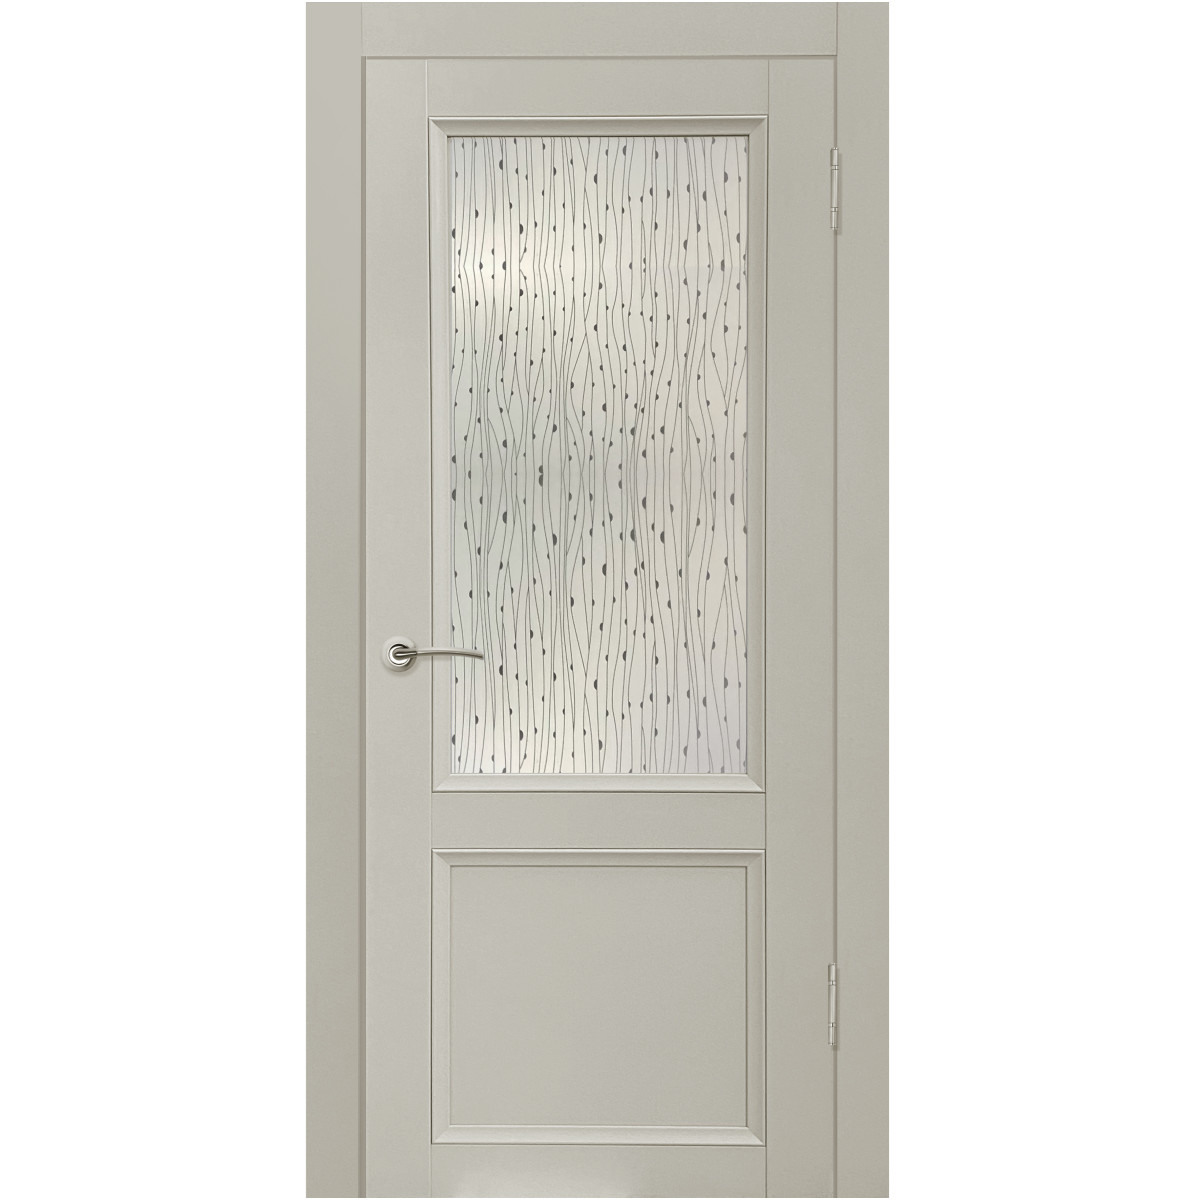 Дверь межкомнатная остеклённая с замком и петлями в комплекте Рондо 80x200 см Hardflex цвет серый жемчуг